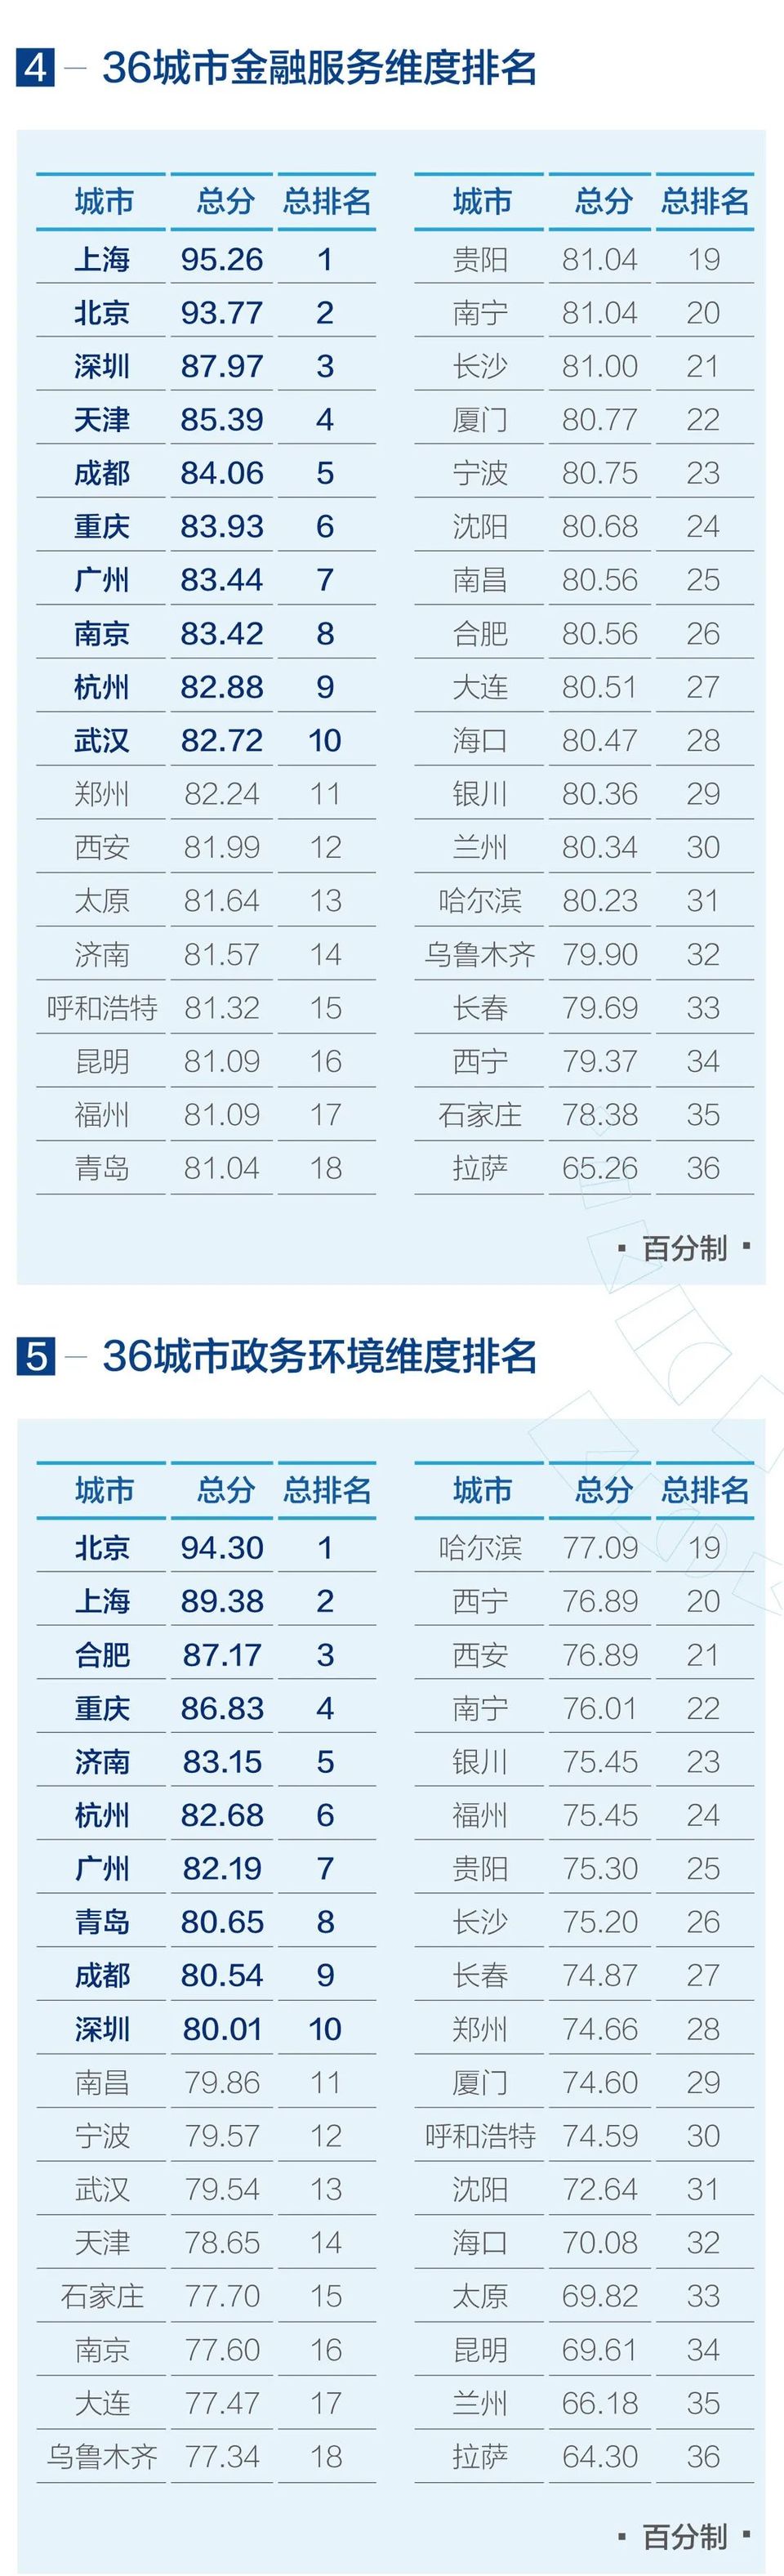 《2019中國城市營商環境報告》發佈 助推“經濟高品質發展”